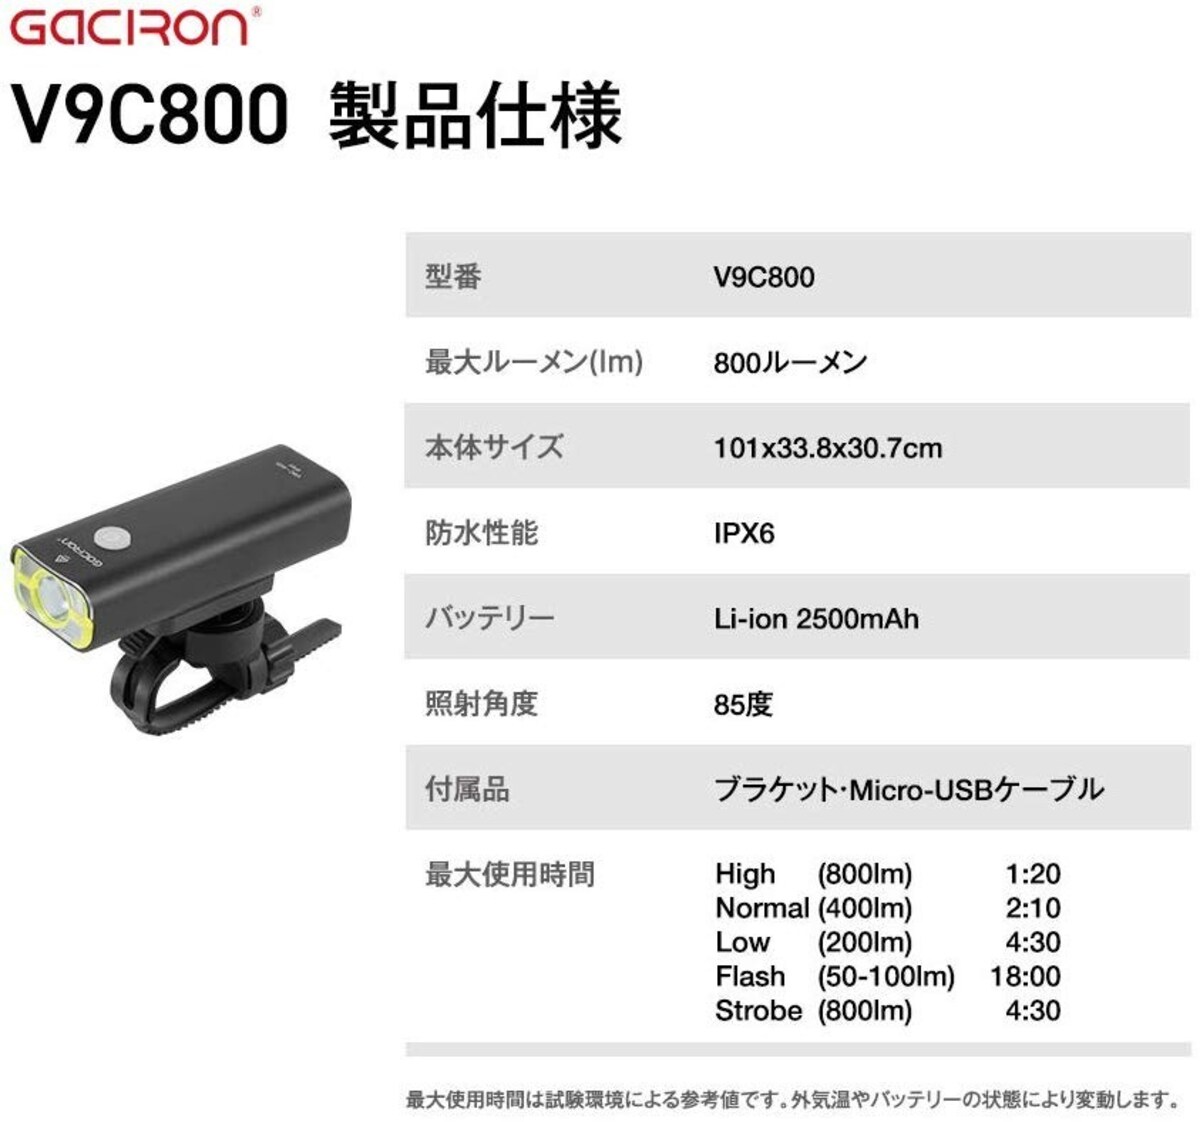  V9C800 自転車用フロントライト画像4 